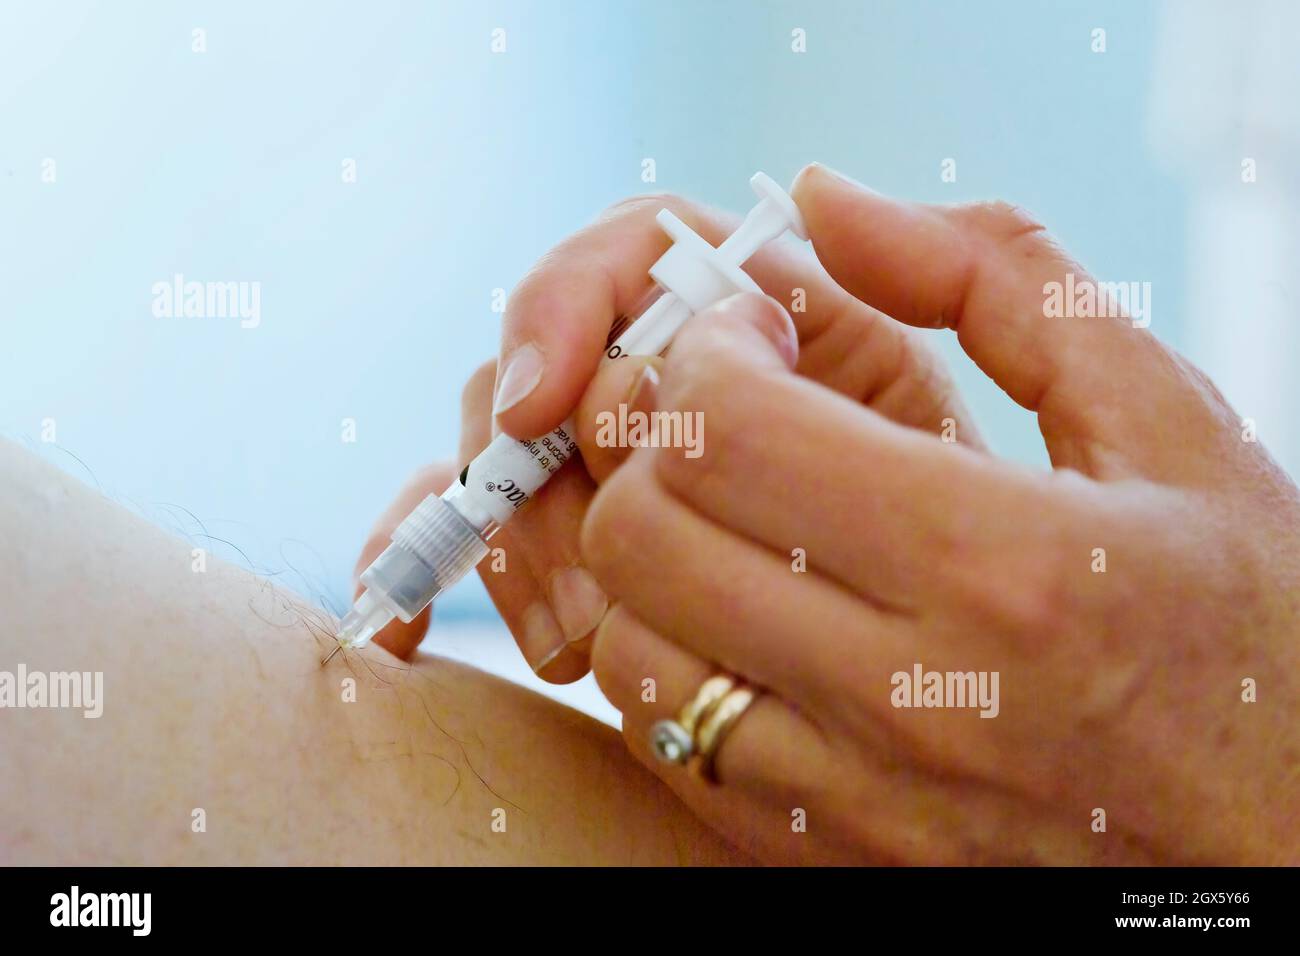 Le patient a reçu un vaccin contre la grippe, administré par une aiguille dans la partie supérieure du bras. Banque D'Images